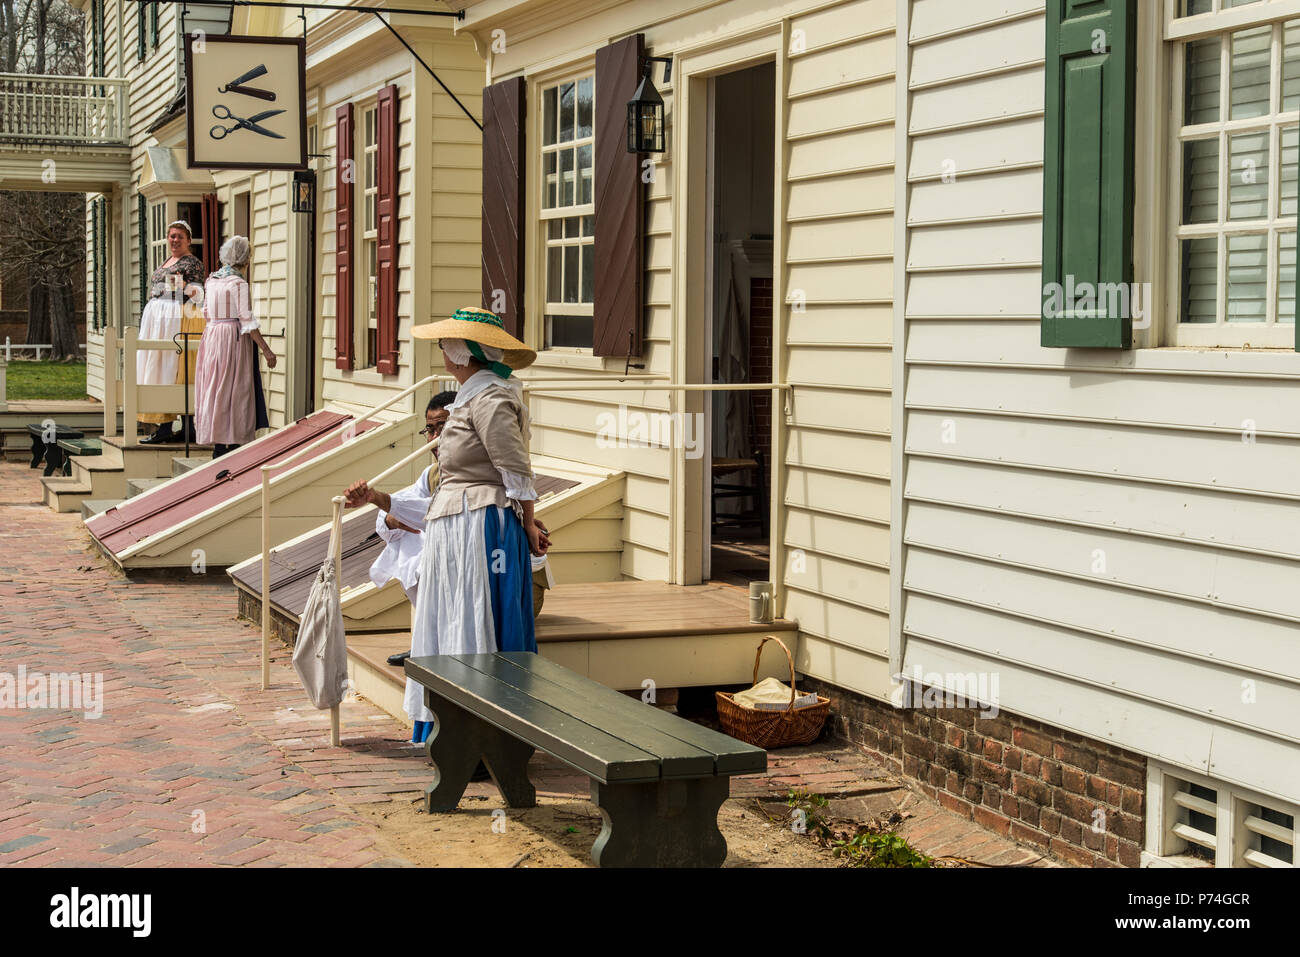 Williamsburg, Virginia, USA - April 1, 2018: Frau in historische Kleidung vor einem Haus gekleidet Stockfoto